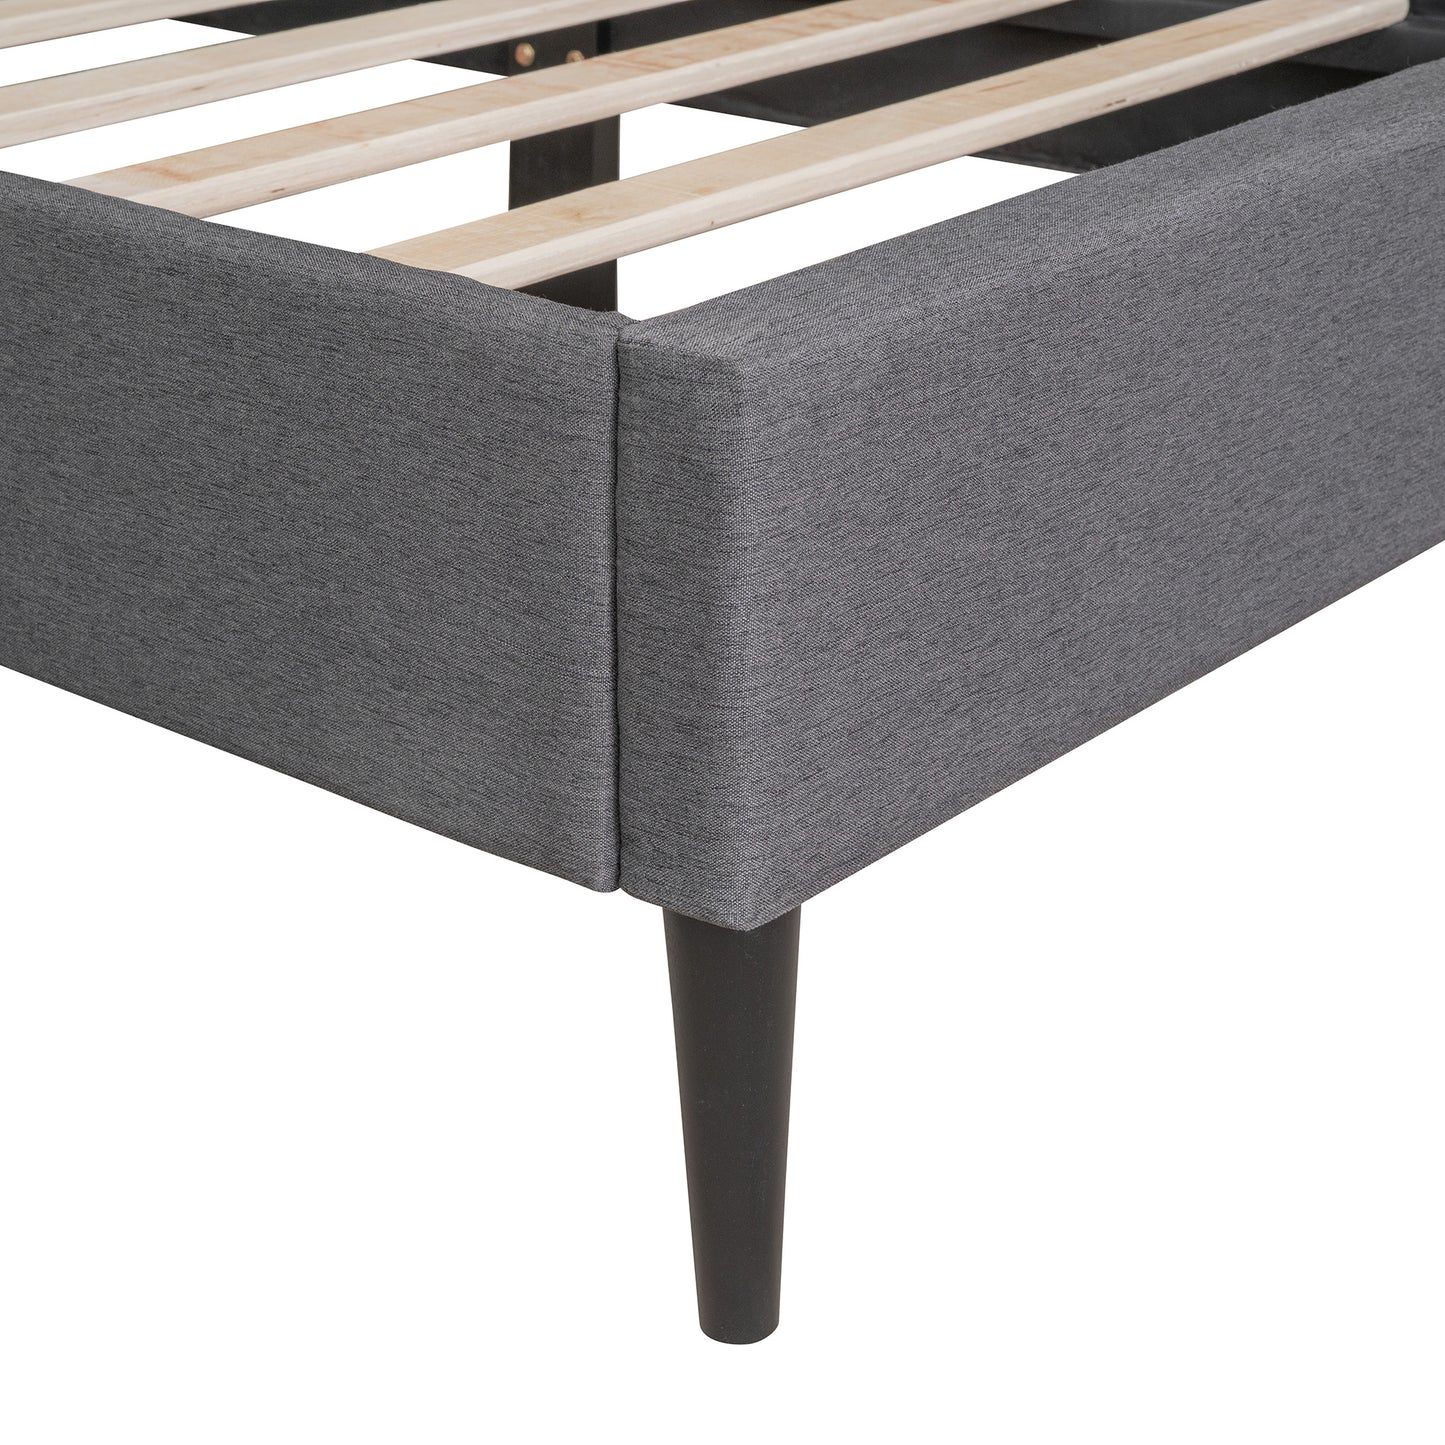 upholstered linen platform bed, gray